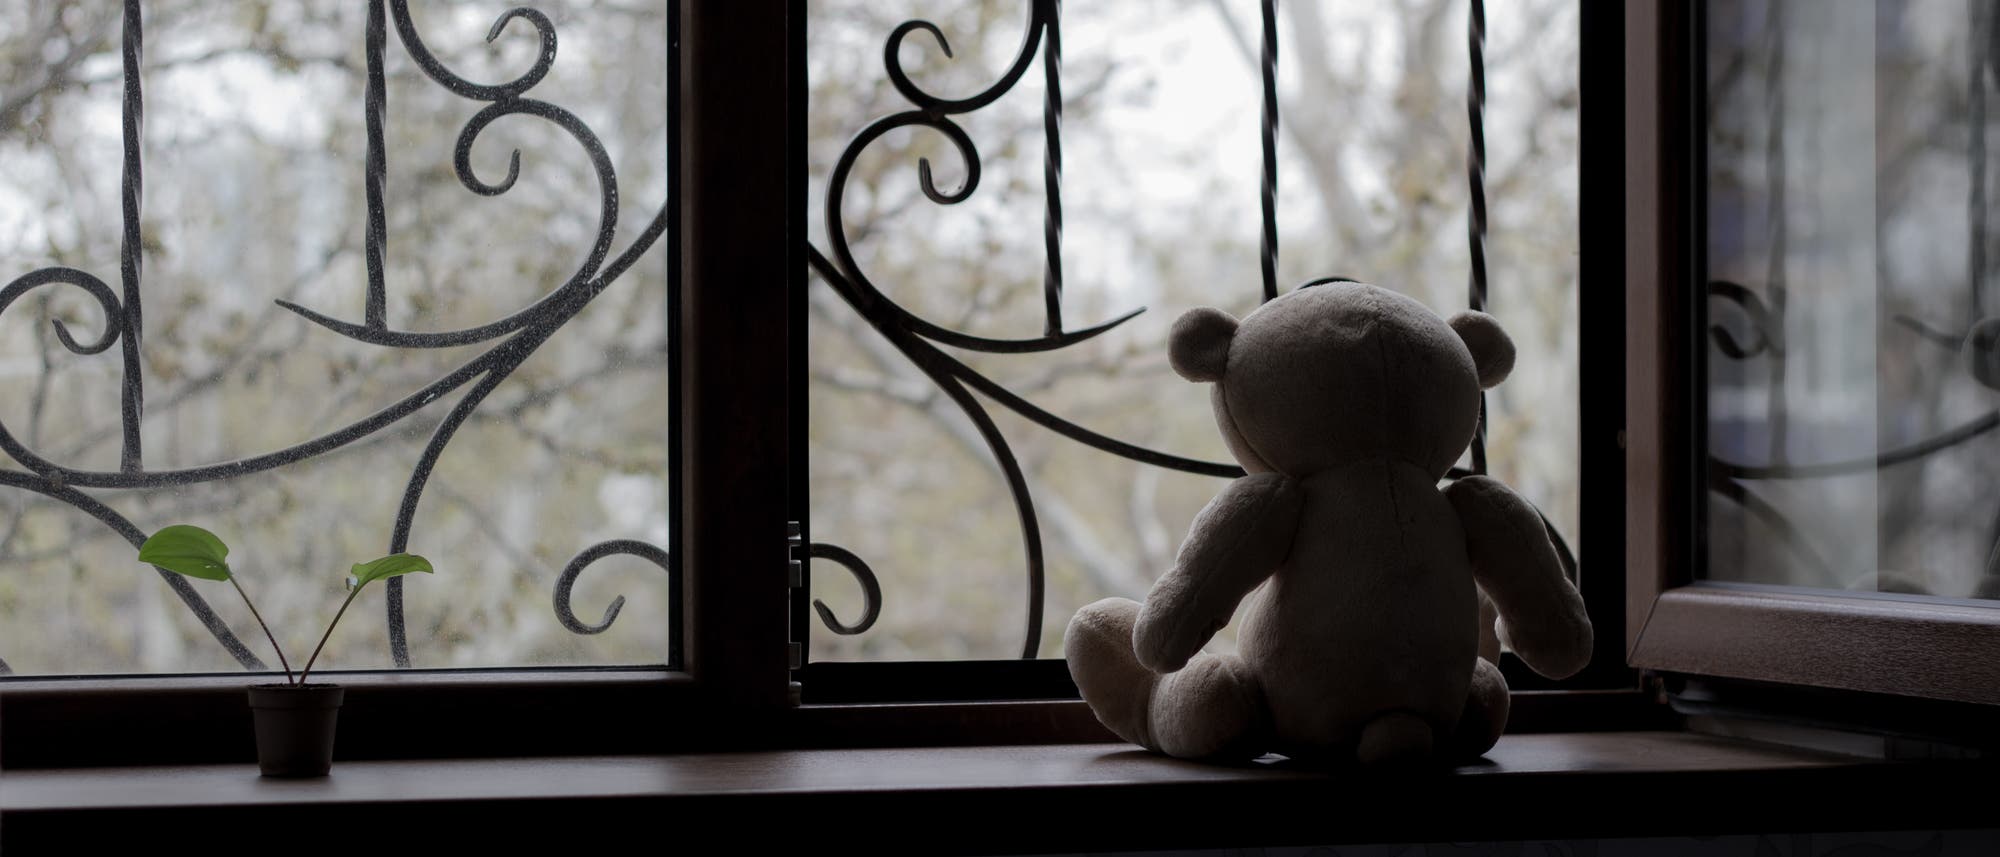 Teddybär sitzt am Fenster mit tristem Ausblick